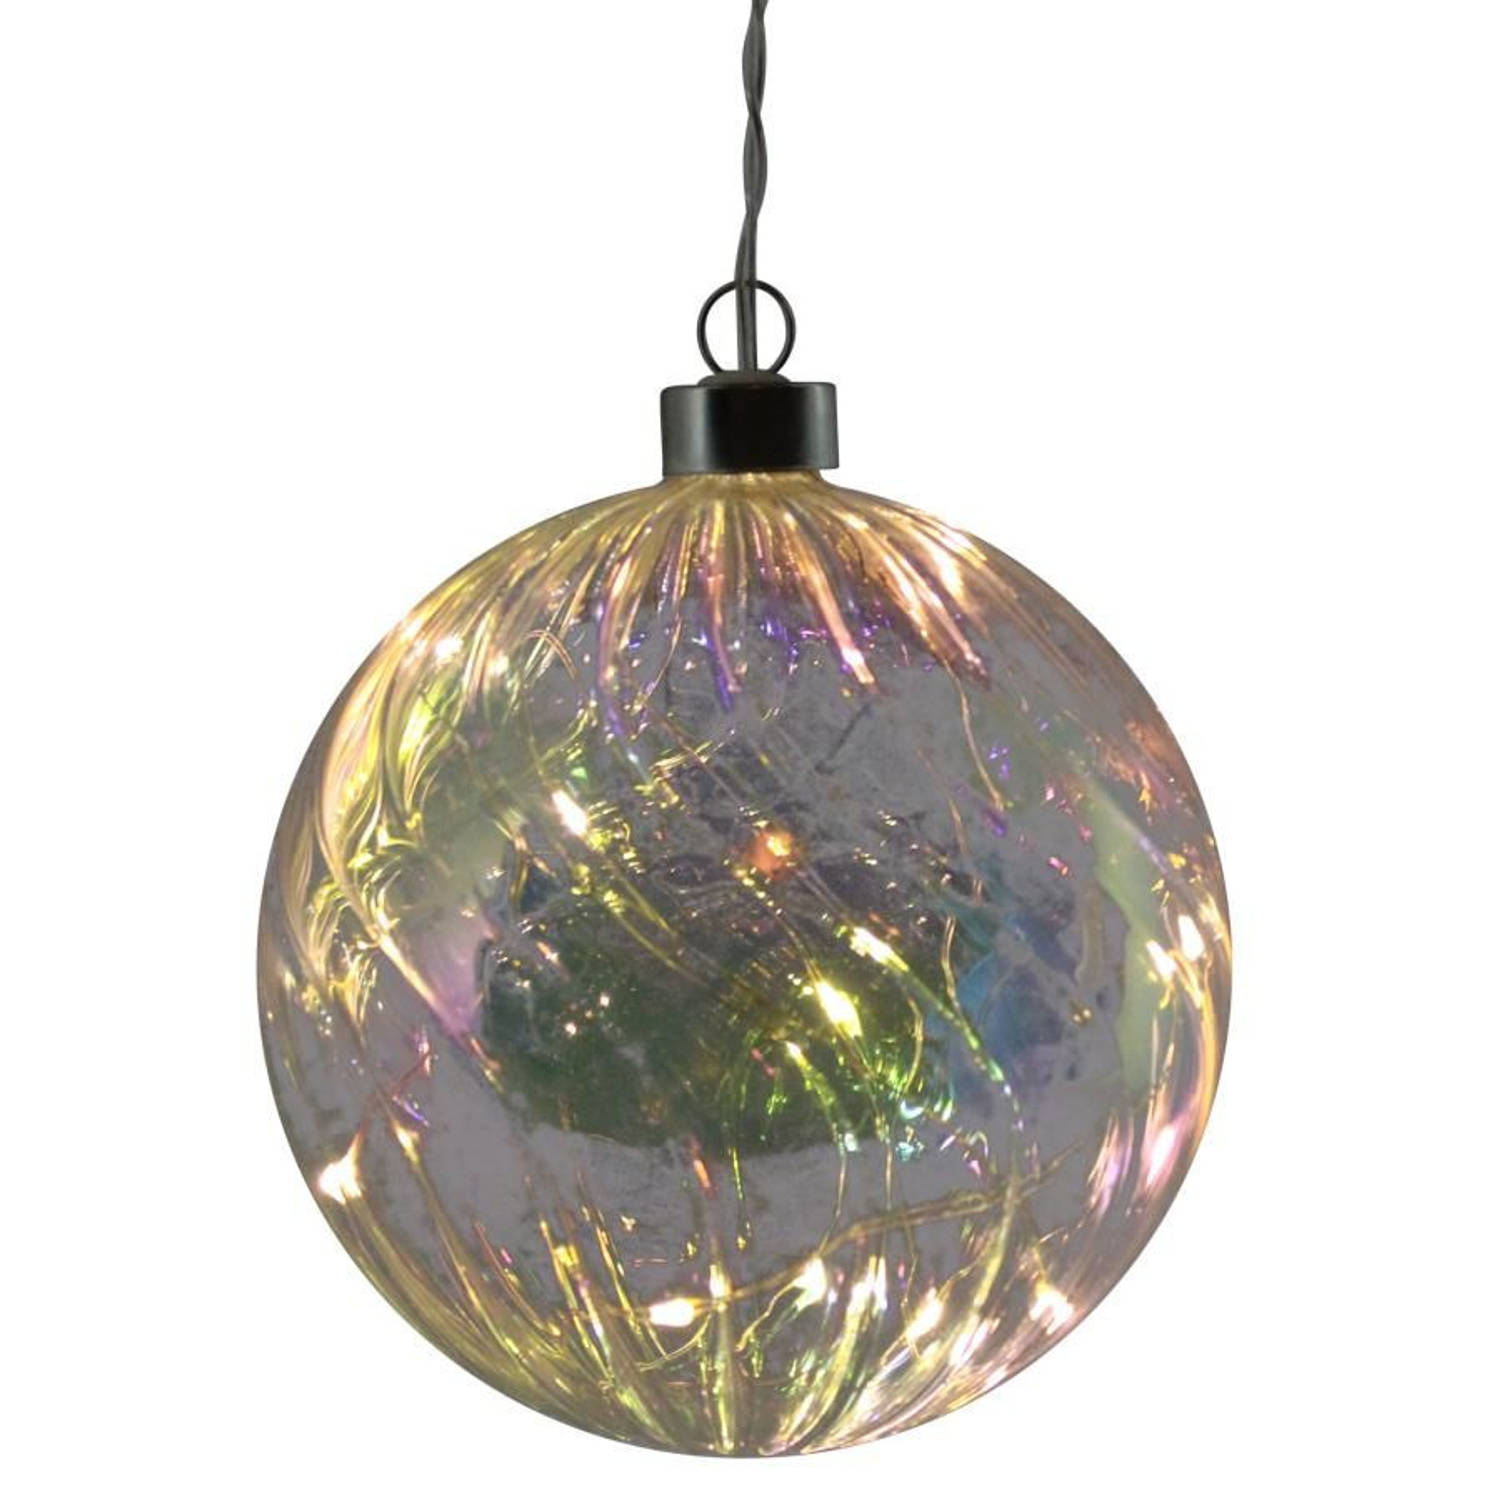 1x stuks verlichte glazen kerstballen met 10 lampjes transparant parelmoer 12 cm - kerstverlichting figuur